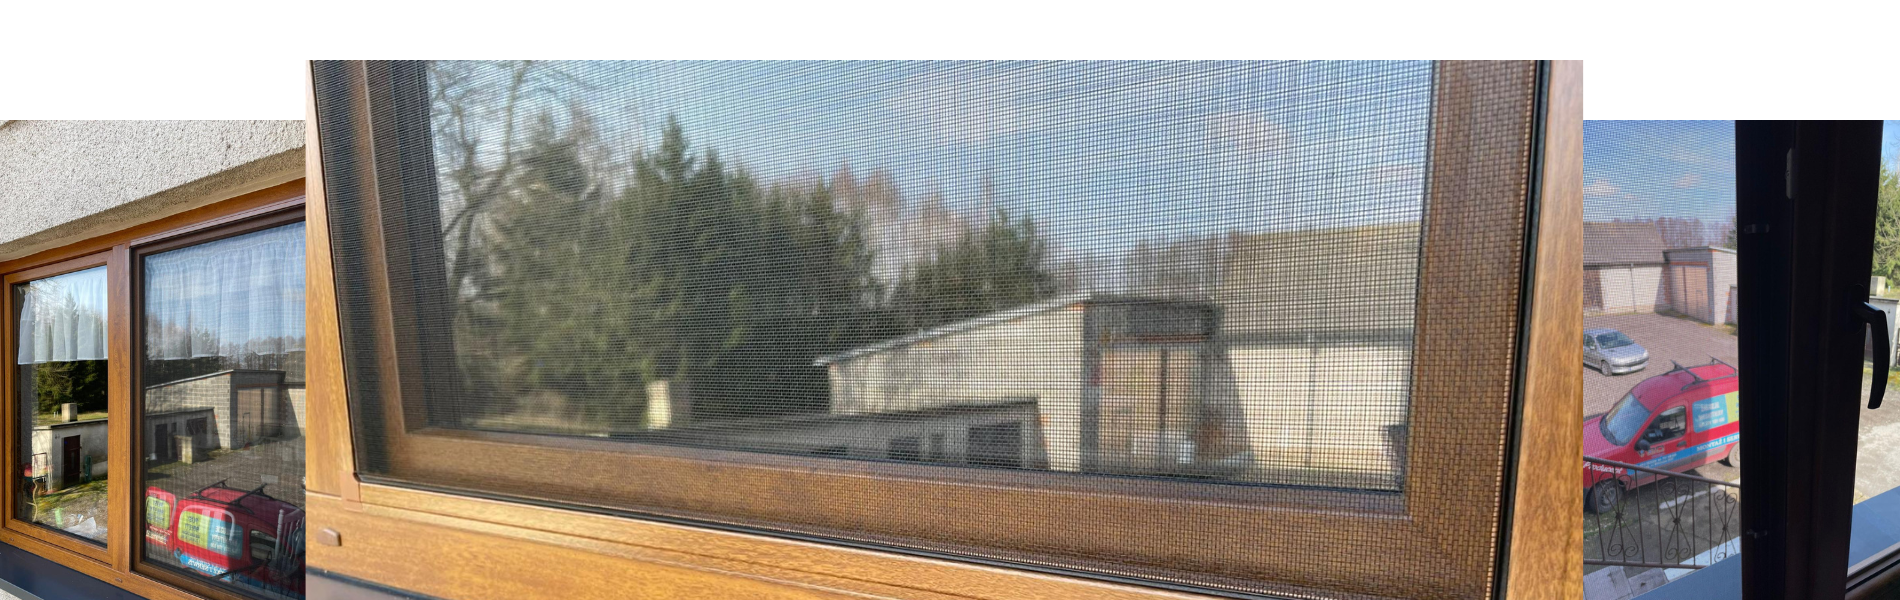 Zdjęcie przedstawia profesjonalnie zamontowane moskitiery w oknach łódzkiego domu, zapewniające skuteczną ochronę przed owadami i dodające komfortu mieszkańcom podczas letnich dni.